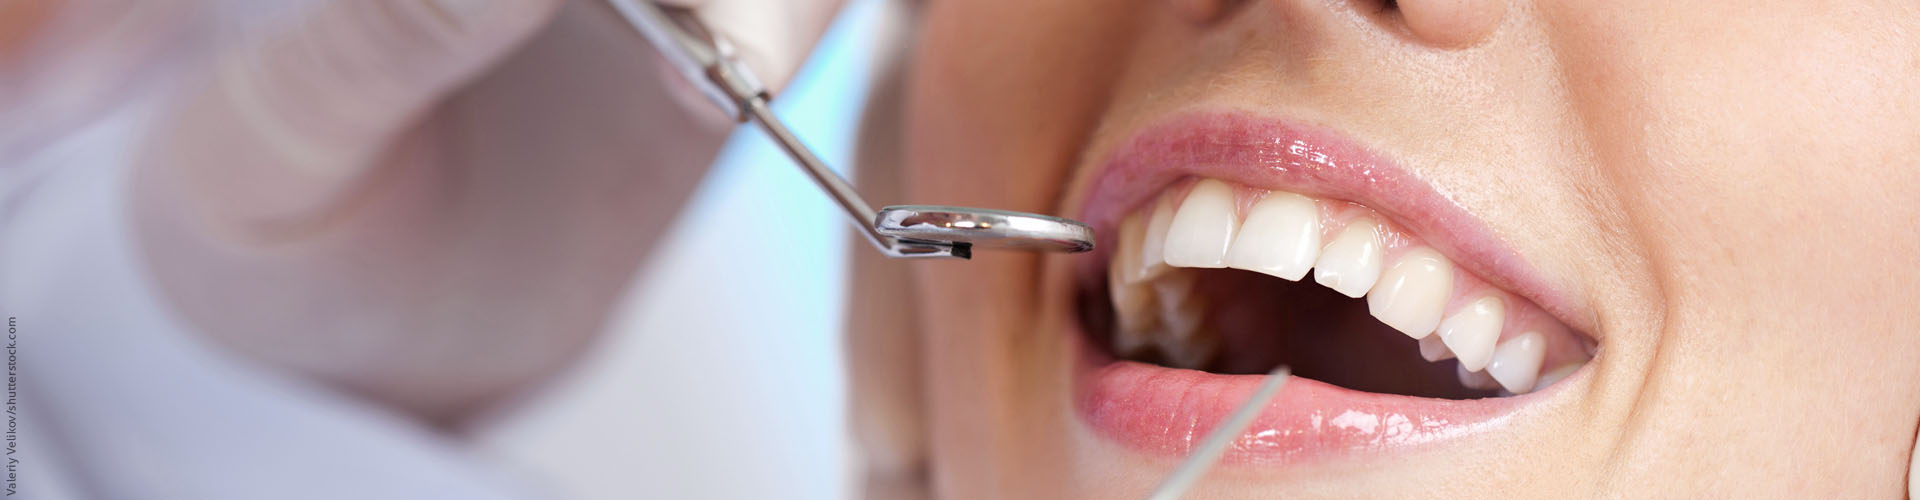 Erhaltung des Zahnstandes nach kieferorthopdischer Behandlung